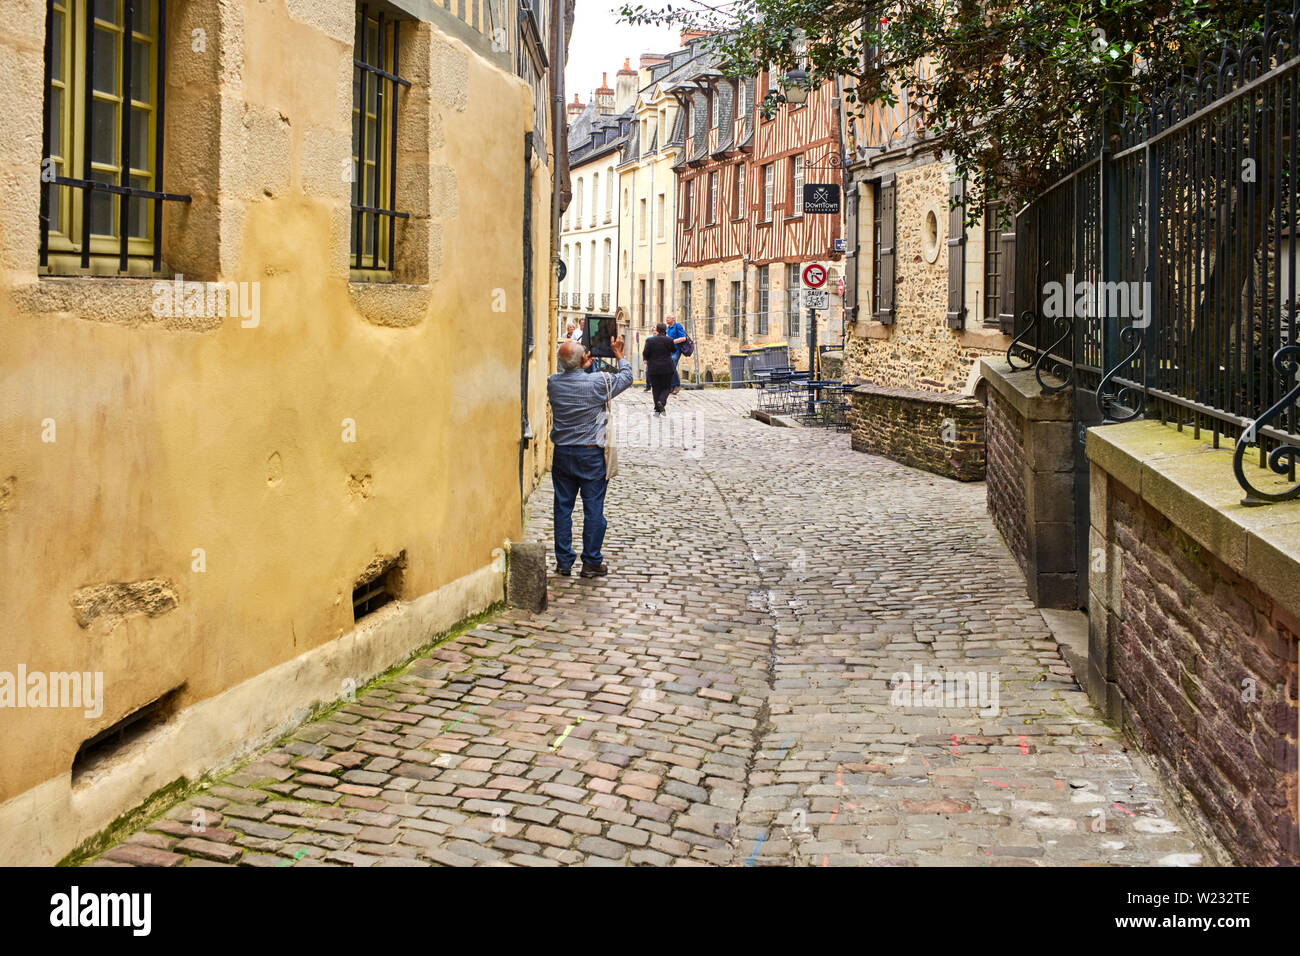 La prise de photo de l'ipad de tourisme dans les vieilles rues de Rennes La capitale de la Bretagne, France Banque D'Images